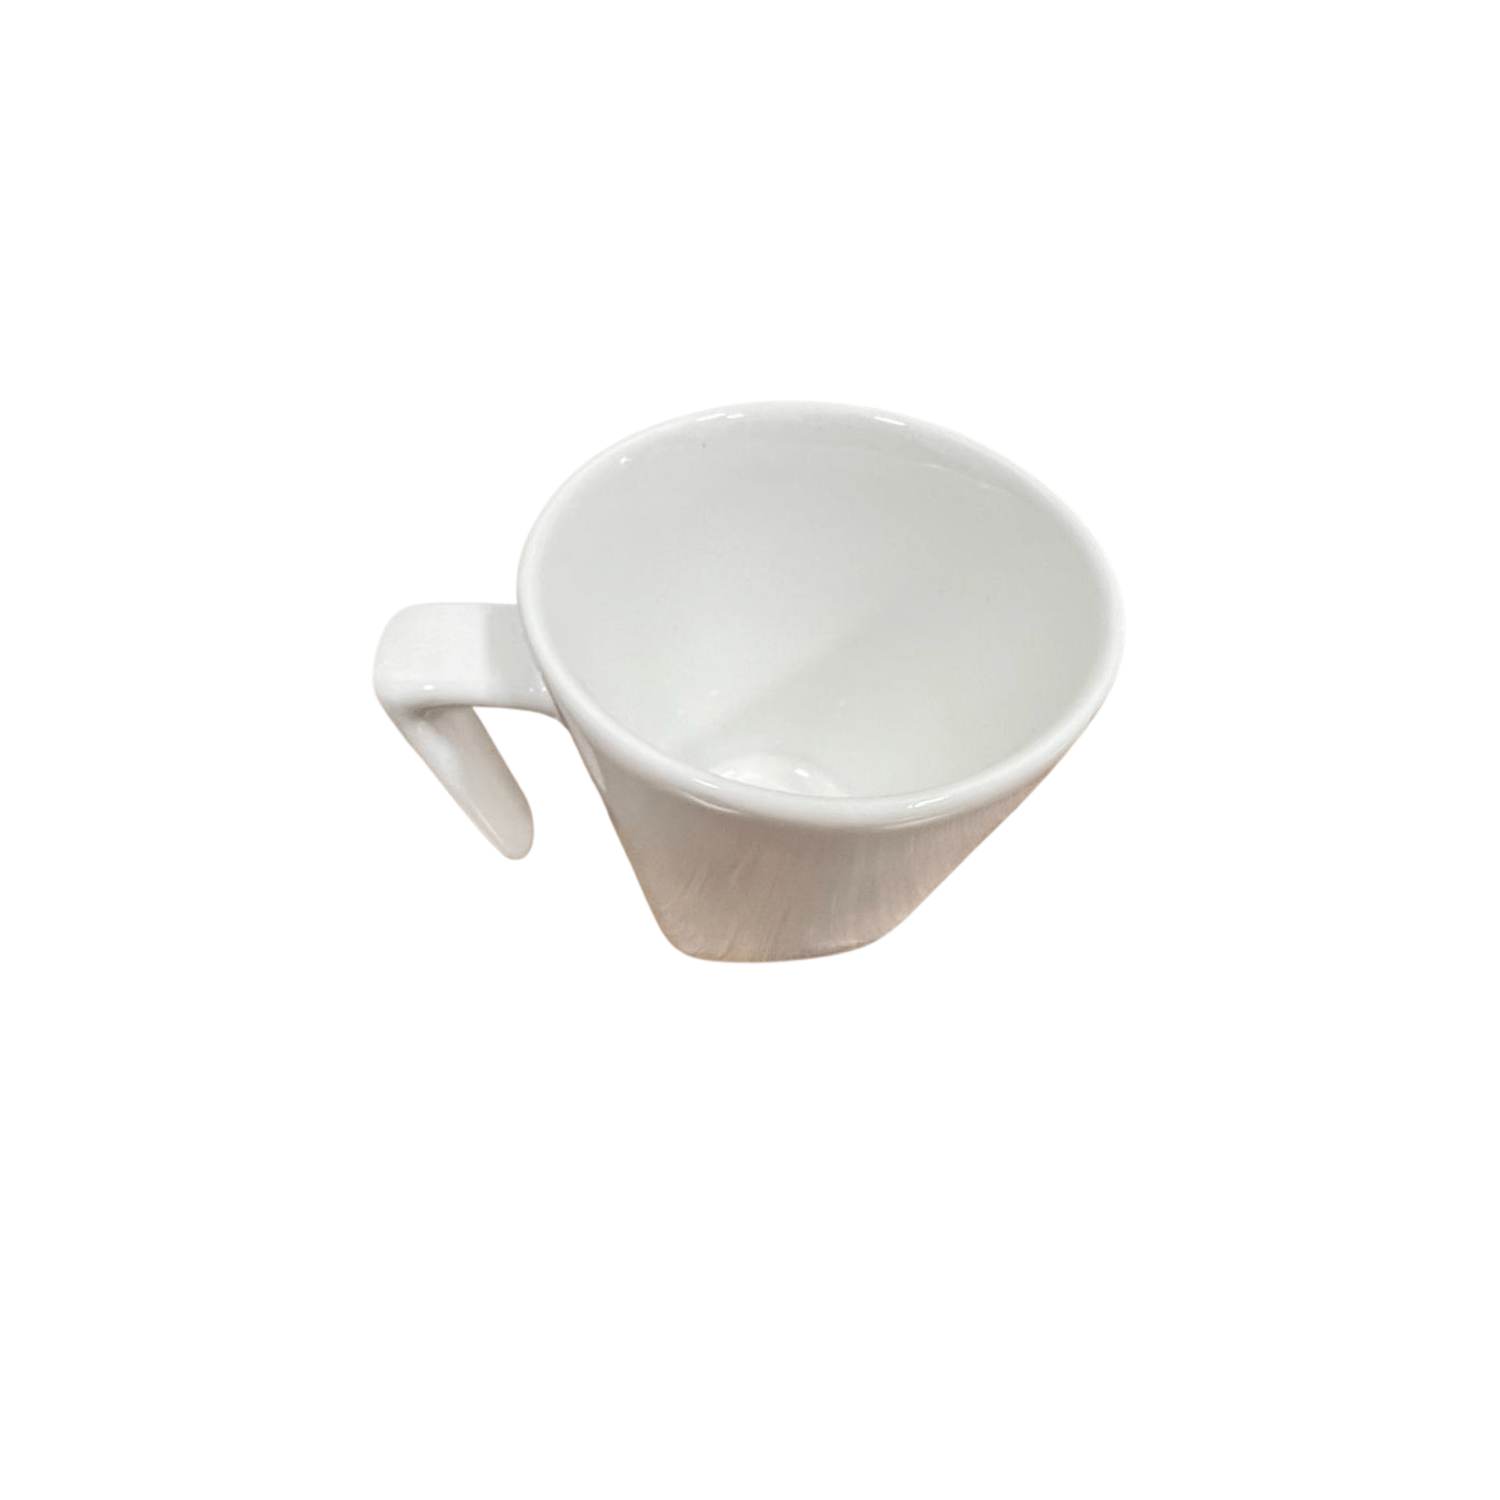 Xicara de cafe com pires plateau branca 65 ml